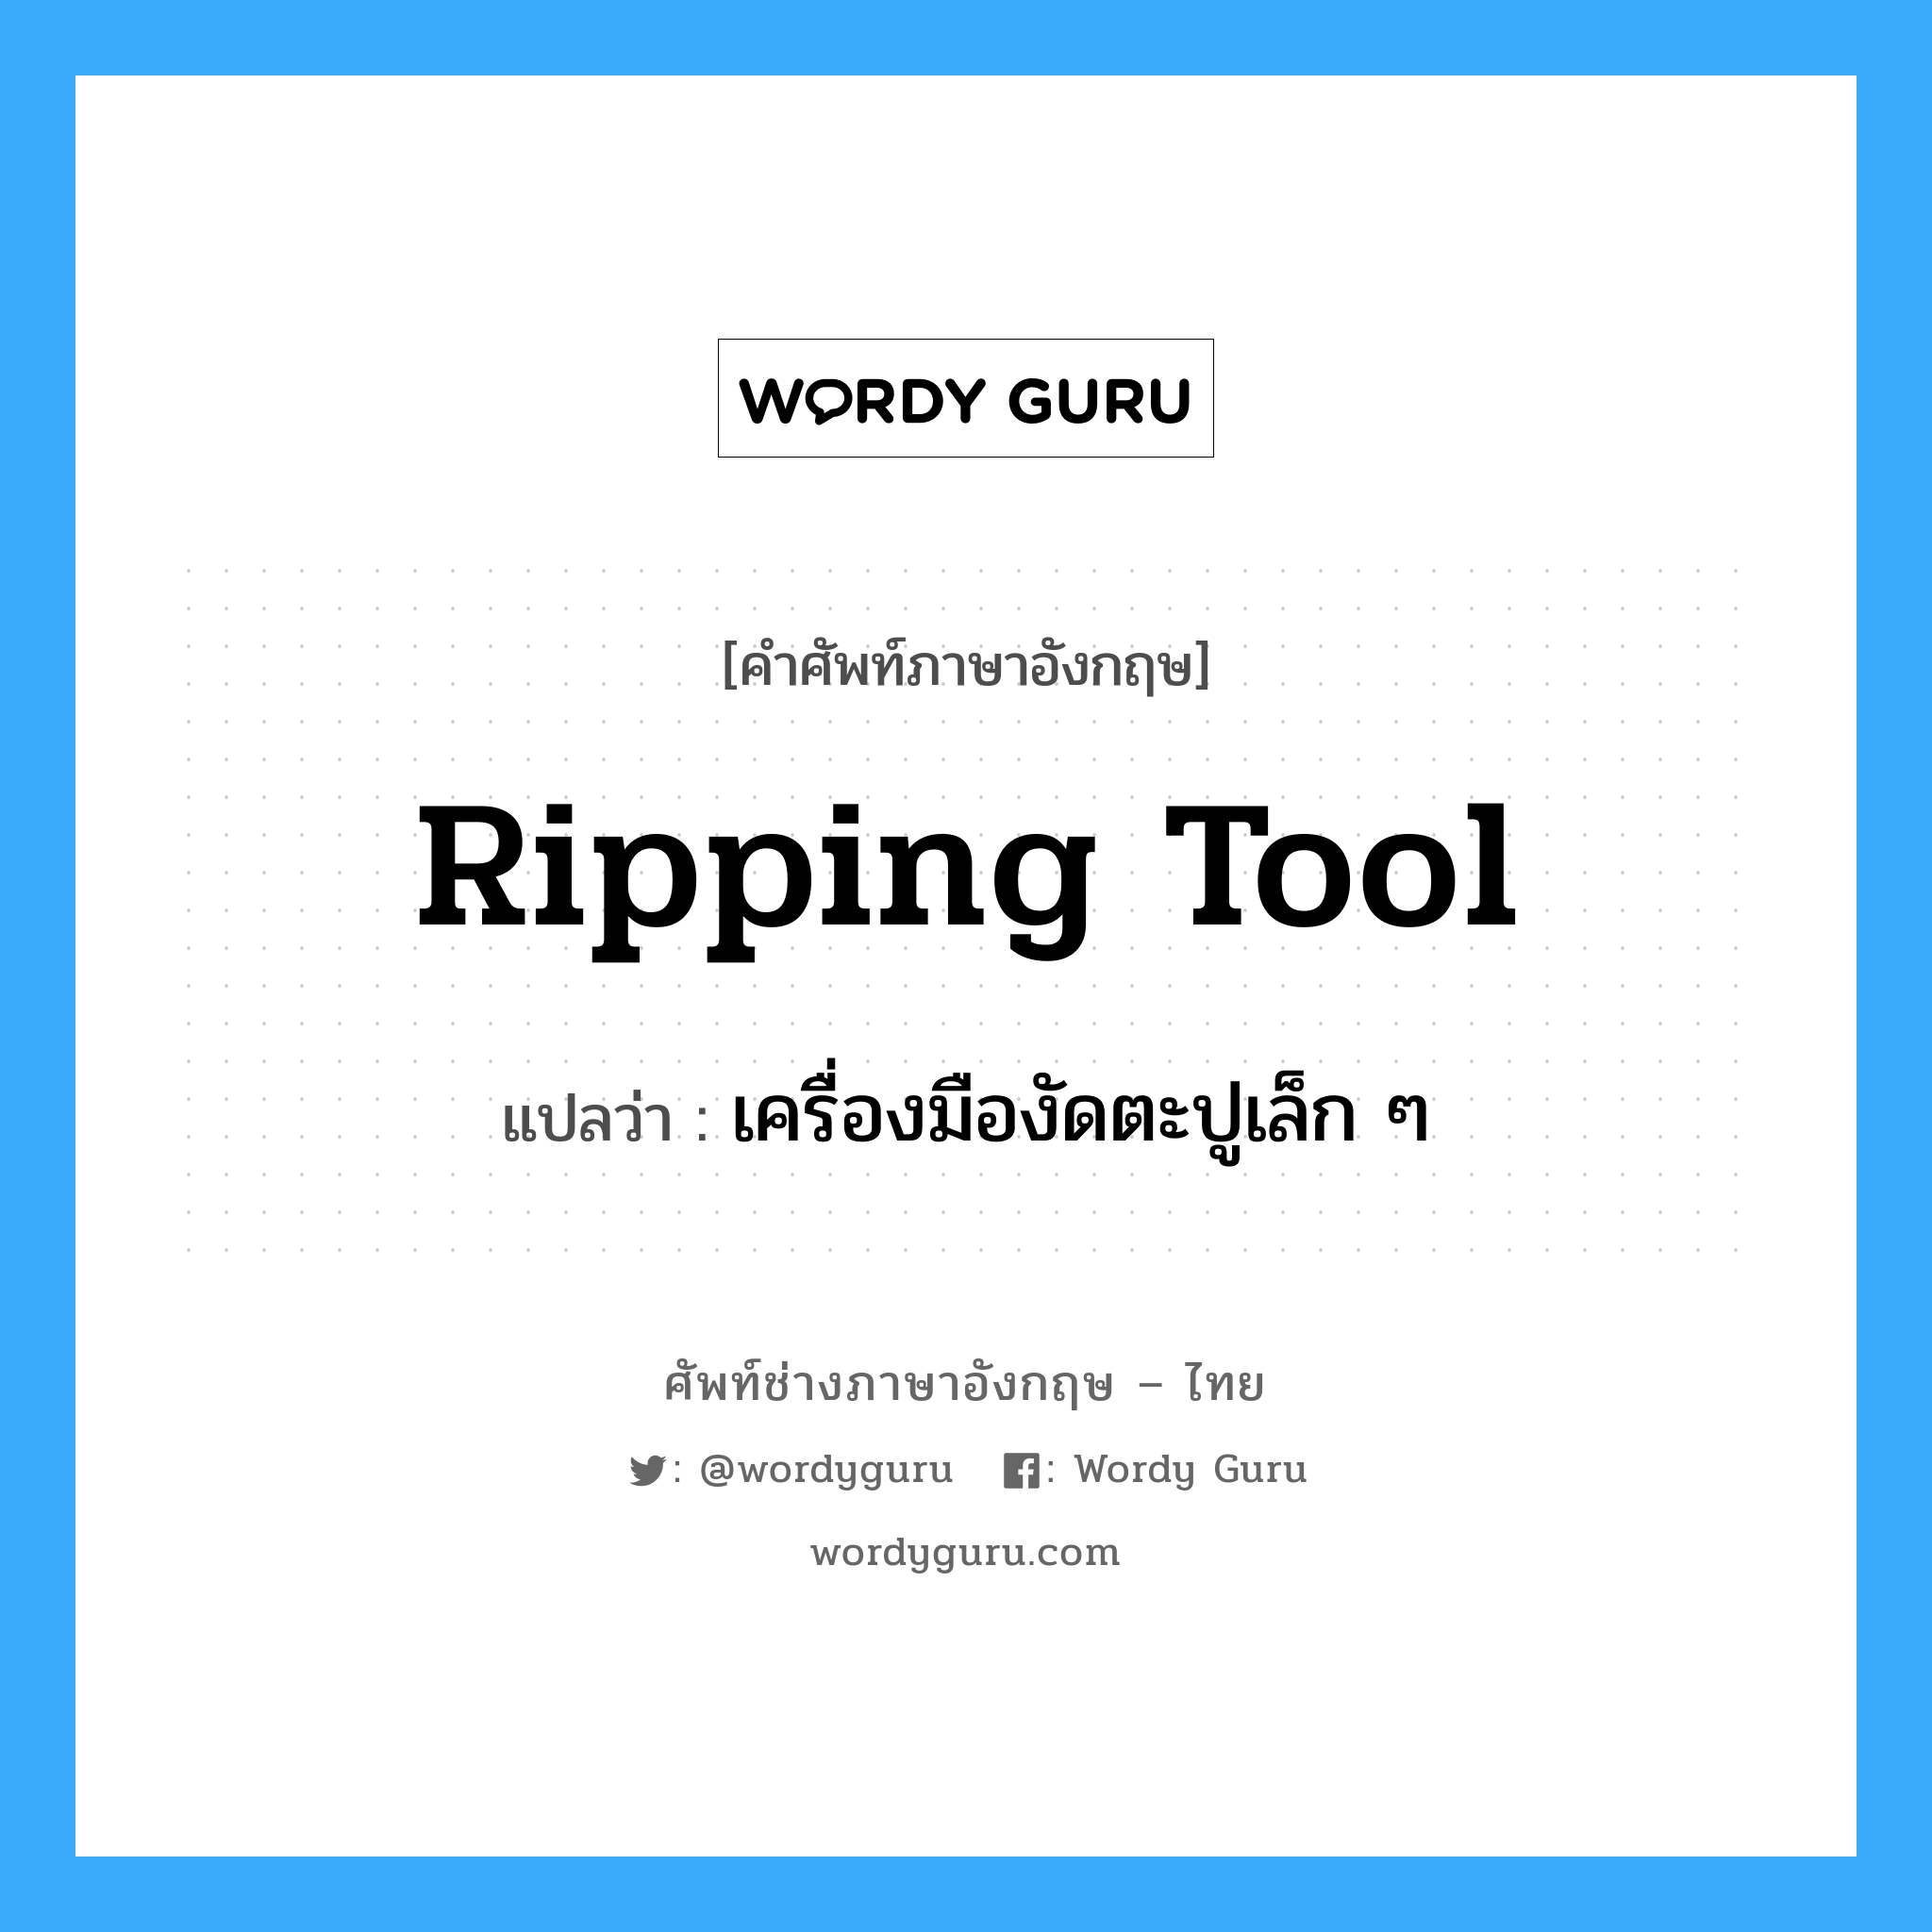 ripping tool แปลว่า?, คำศัพท์ช่างภาษาอังกฤษ - ไทย ripping tool คำศัพท์ภาษาอังกฤษ ripping tool แปลว่า เครื่องมืองัดตะปูเล็ก ๆ